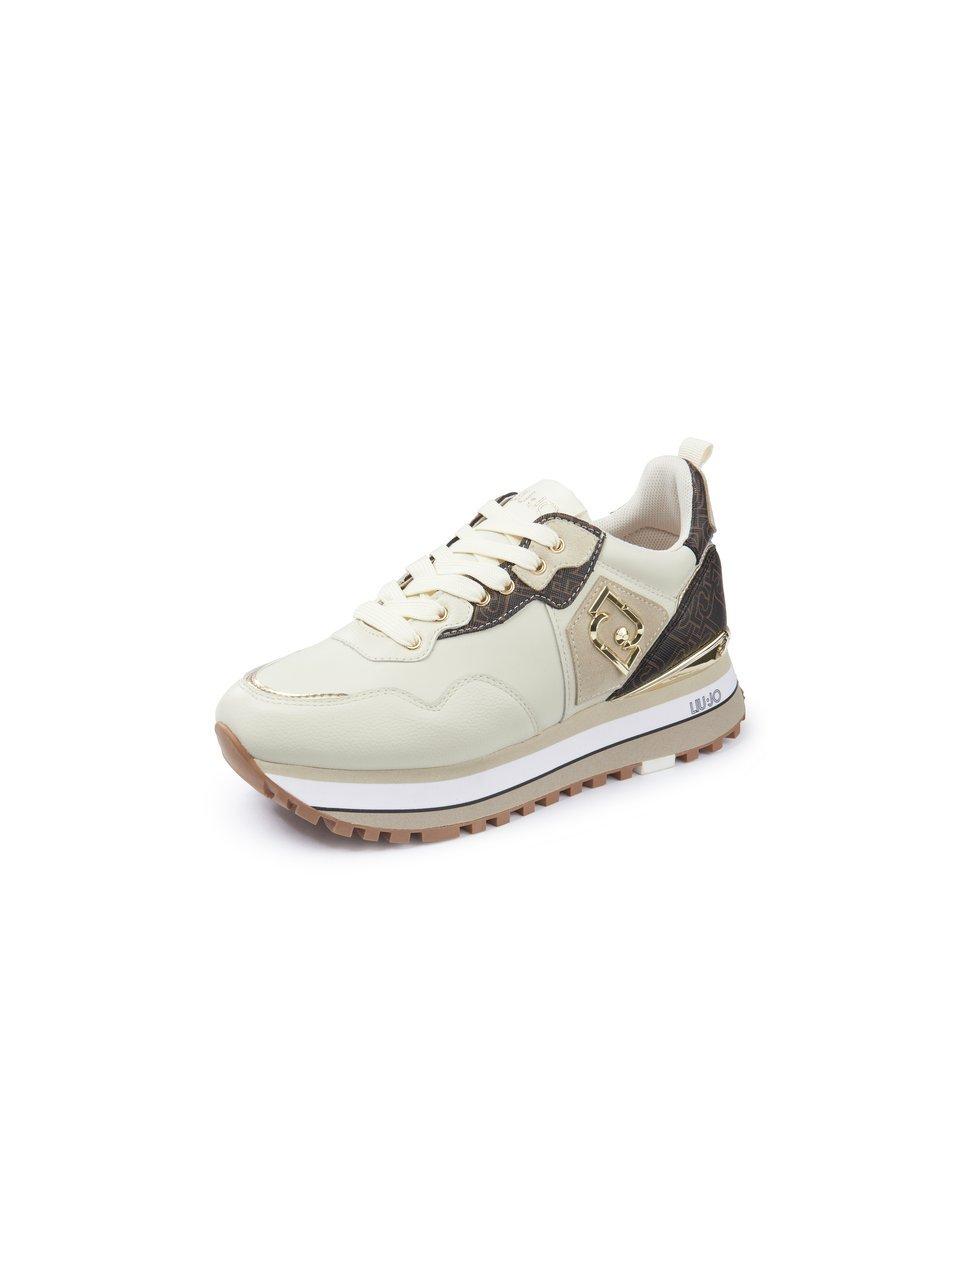 Liu Jo Maxi Wonder 01 Leren Platform Sneakers Dames - Bruin - Maat 38